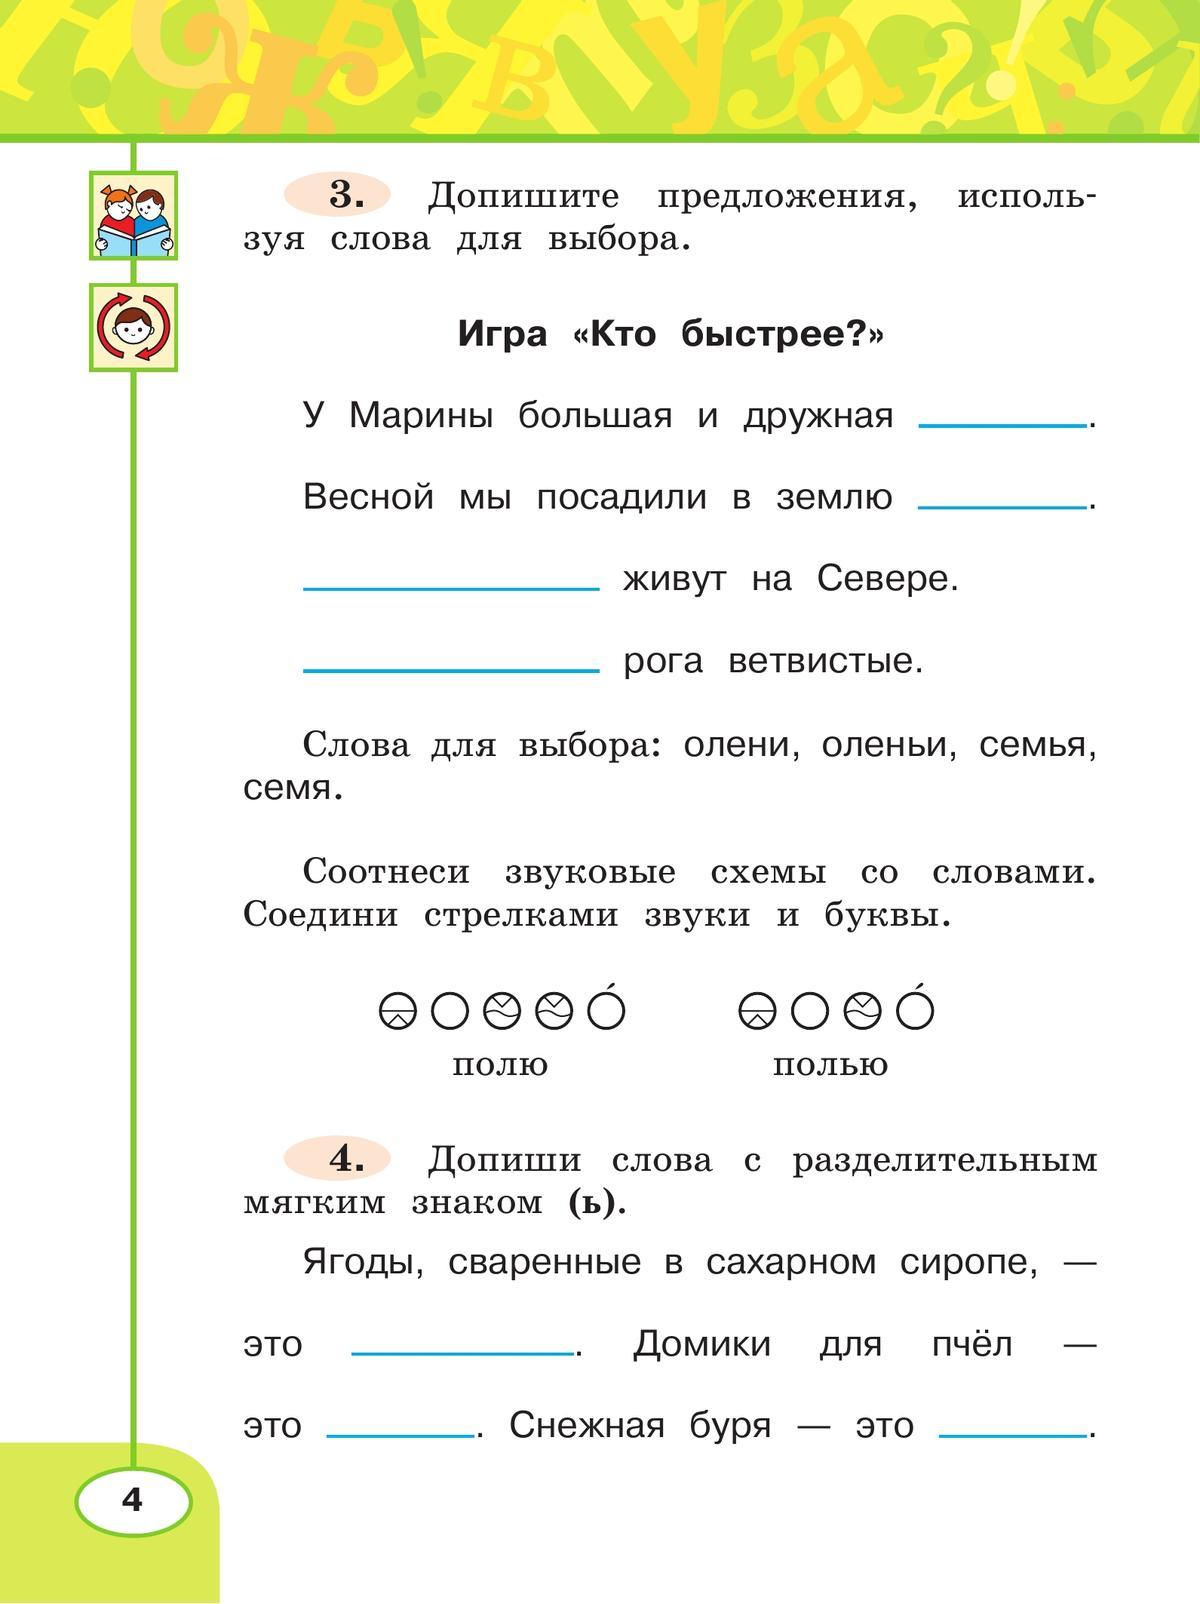 Русский язык. Рабочая тетрадь. 2 класс. В 2-х ч. Ч. 2 6